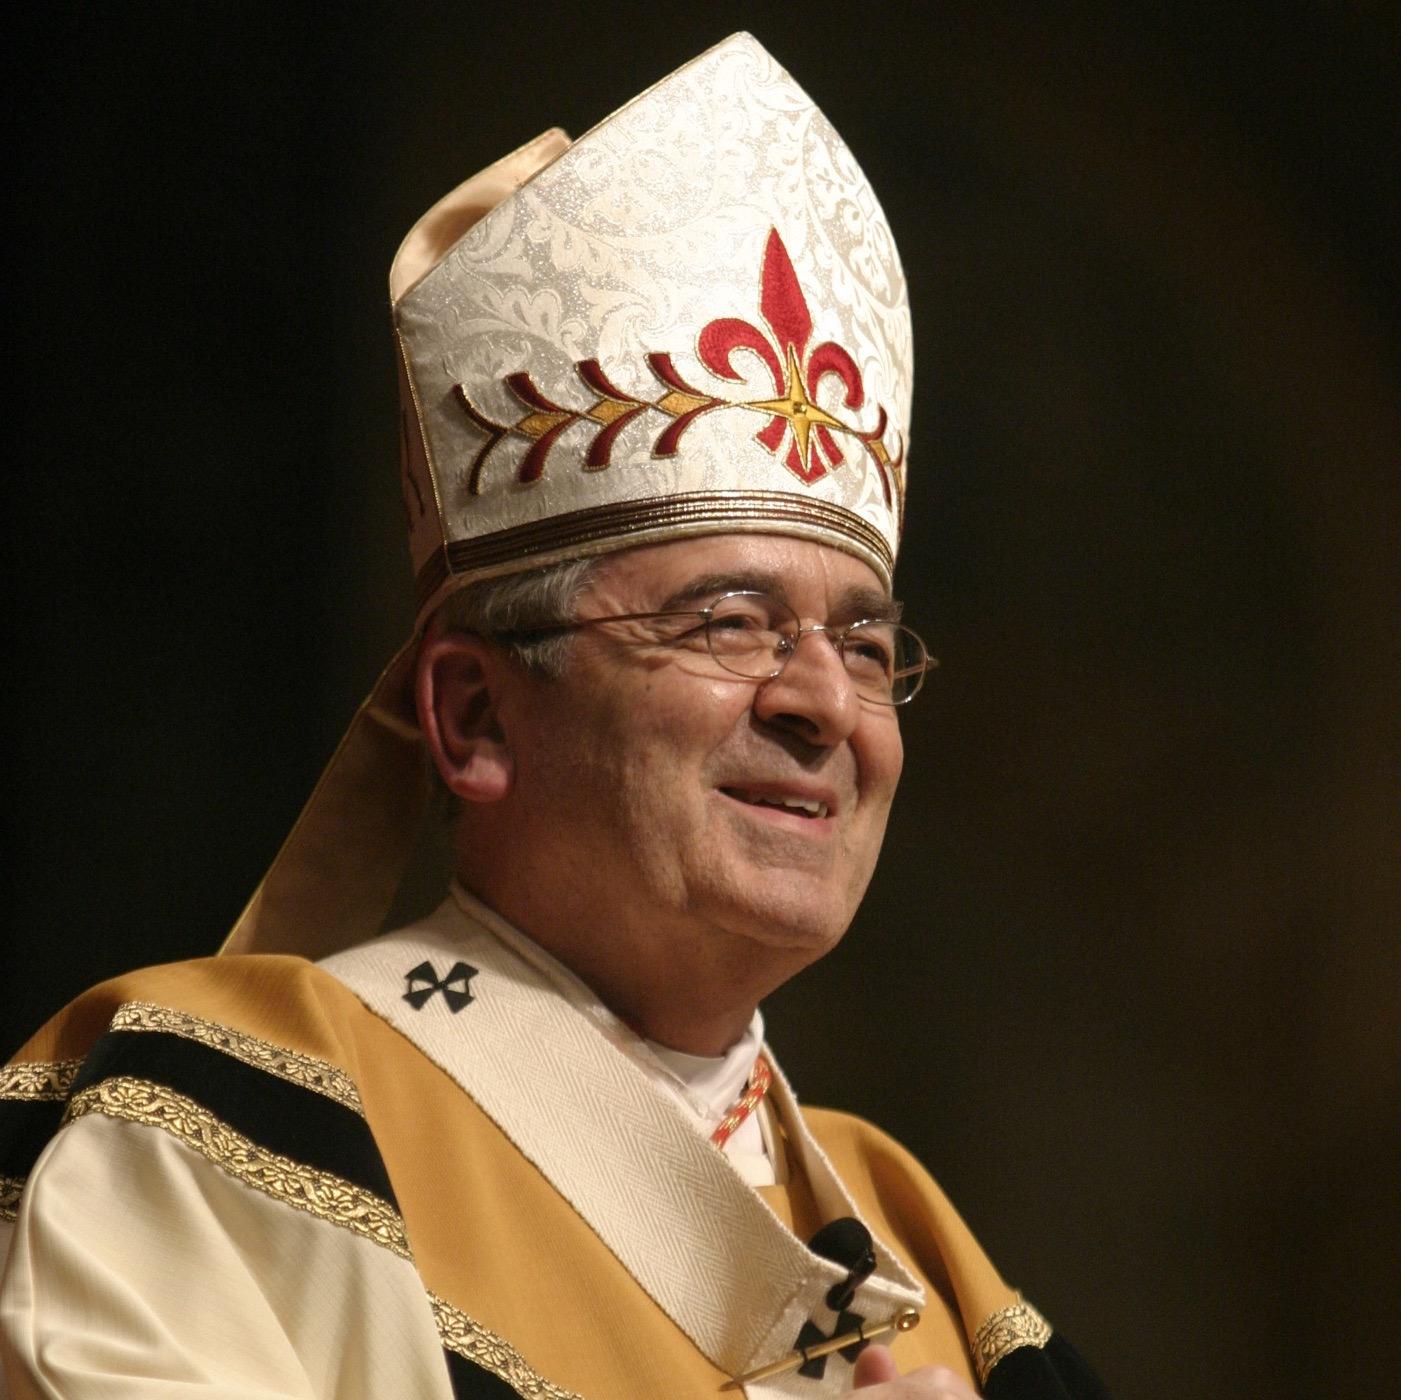 Cardinal Rigali